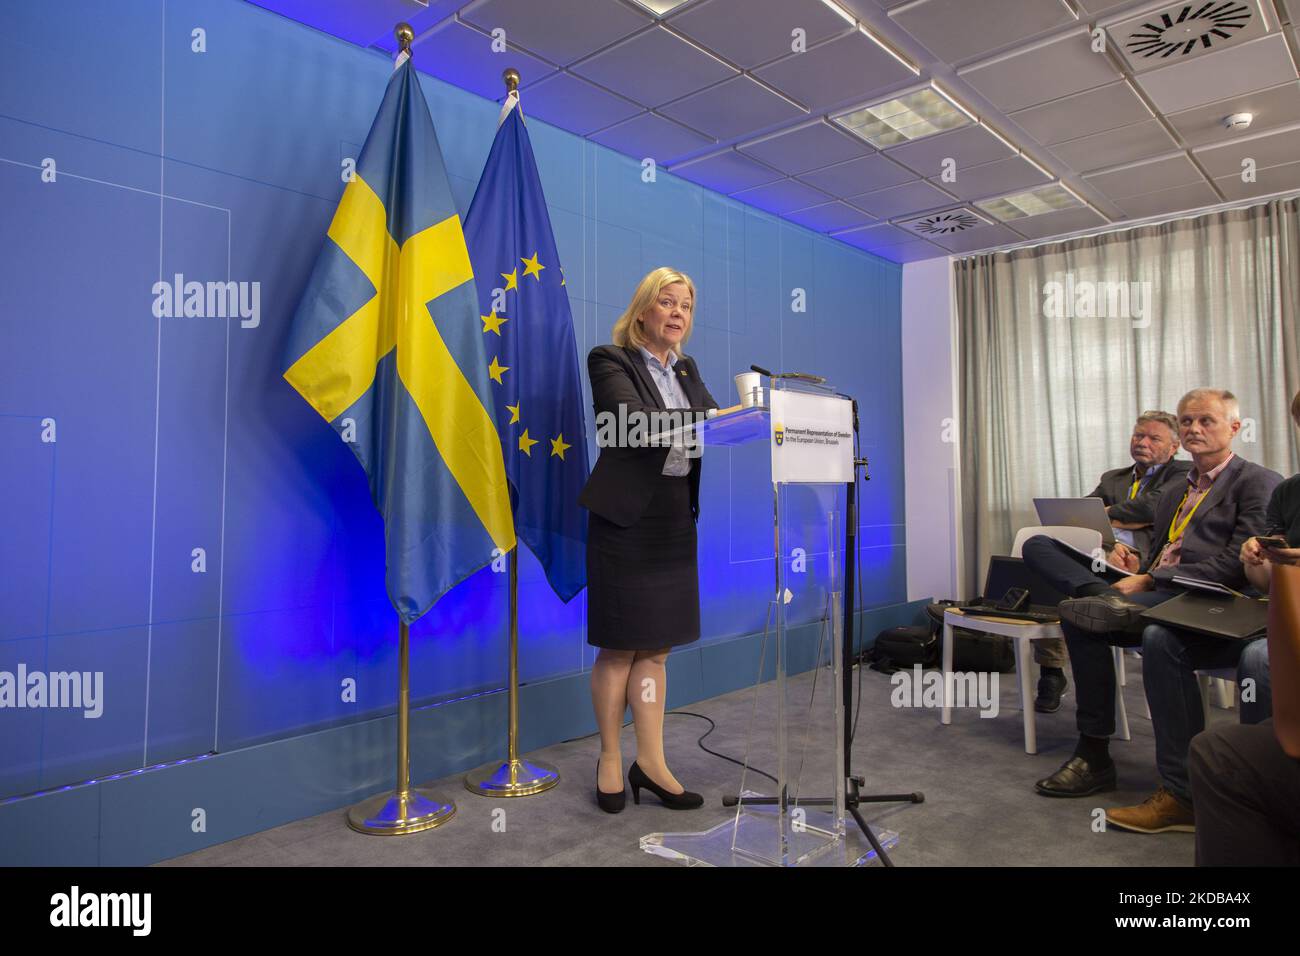 Die schwedische Premierministerin Magdalena Andersson spricht auf einer Pressekonferenz mit den Medien nach dem Ende des 2-tägigen außerordentlichen EU-Sondergipfels über die Ukraine, Energie und Verteidigung über eine sechste Welle von Sanktionen gegen Russland und russische Ölexporte mit speziellen Pipelineausnahmen nach Ungarn. Die schwedische Regierung hat sich nach dem russisch-ukrainischen Konflikt formell um den Beitritt zum NATO-Militärbündnis beworben. Treffen der 27 EU-Staats- und Regierungschefs auf dem Europäischen Rat in Brüssel, Belgien, am 31. Mai 2022 (Foto: Nicolas Economou/NurPhoto) Stockfoto